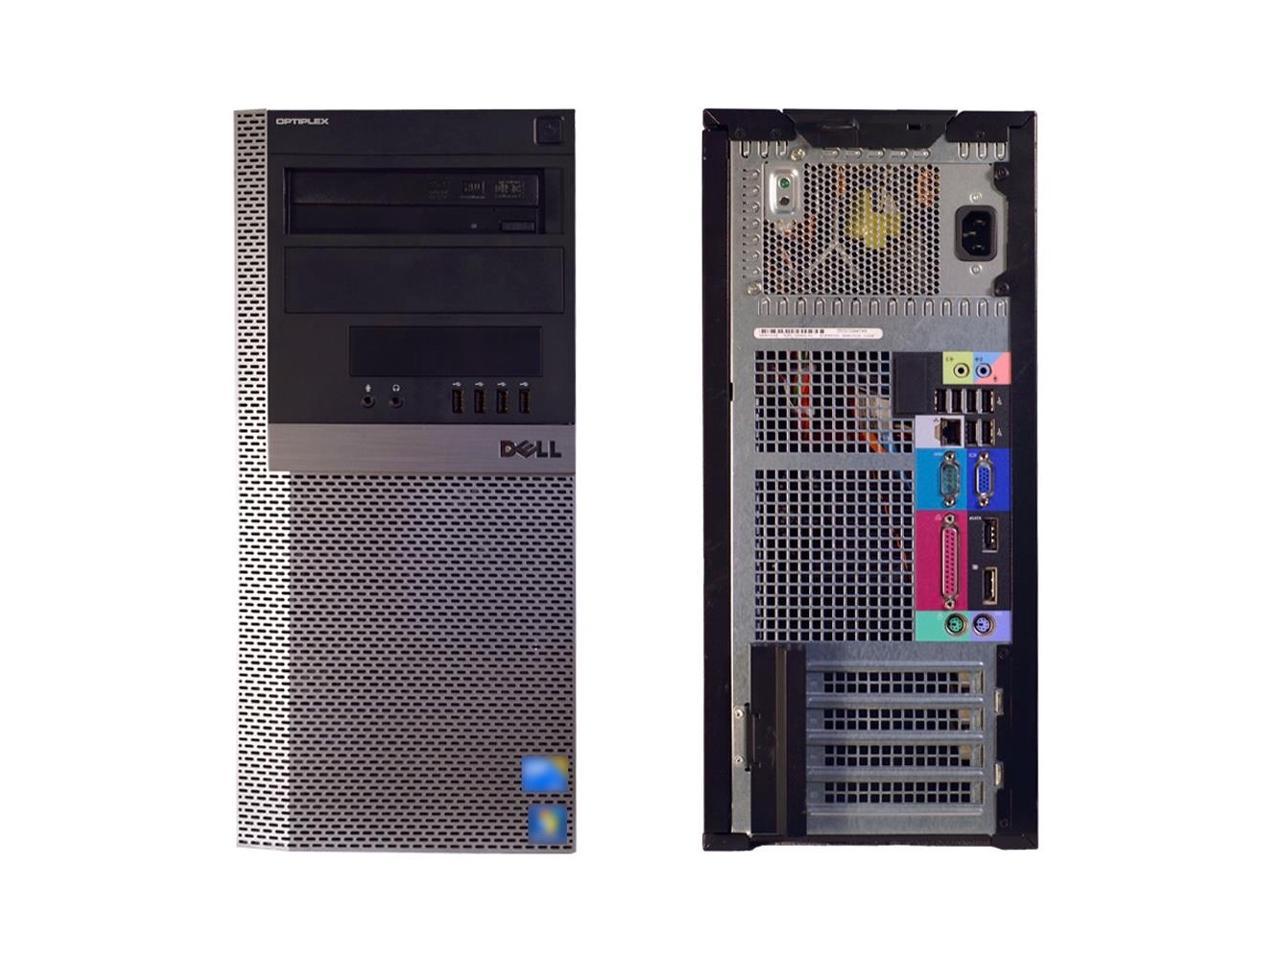 Dell OptiPlex 960 MT/Core 2 Duo E8400 @ 3.00 GHz/4GB DDR2/80GB HDD/DVD-RW/No OS